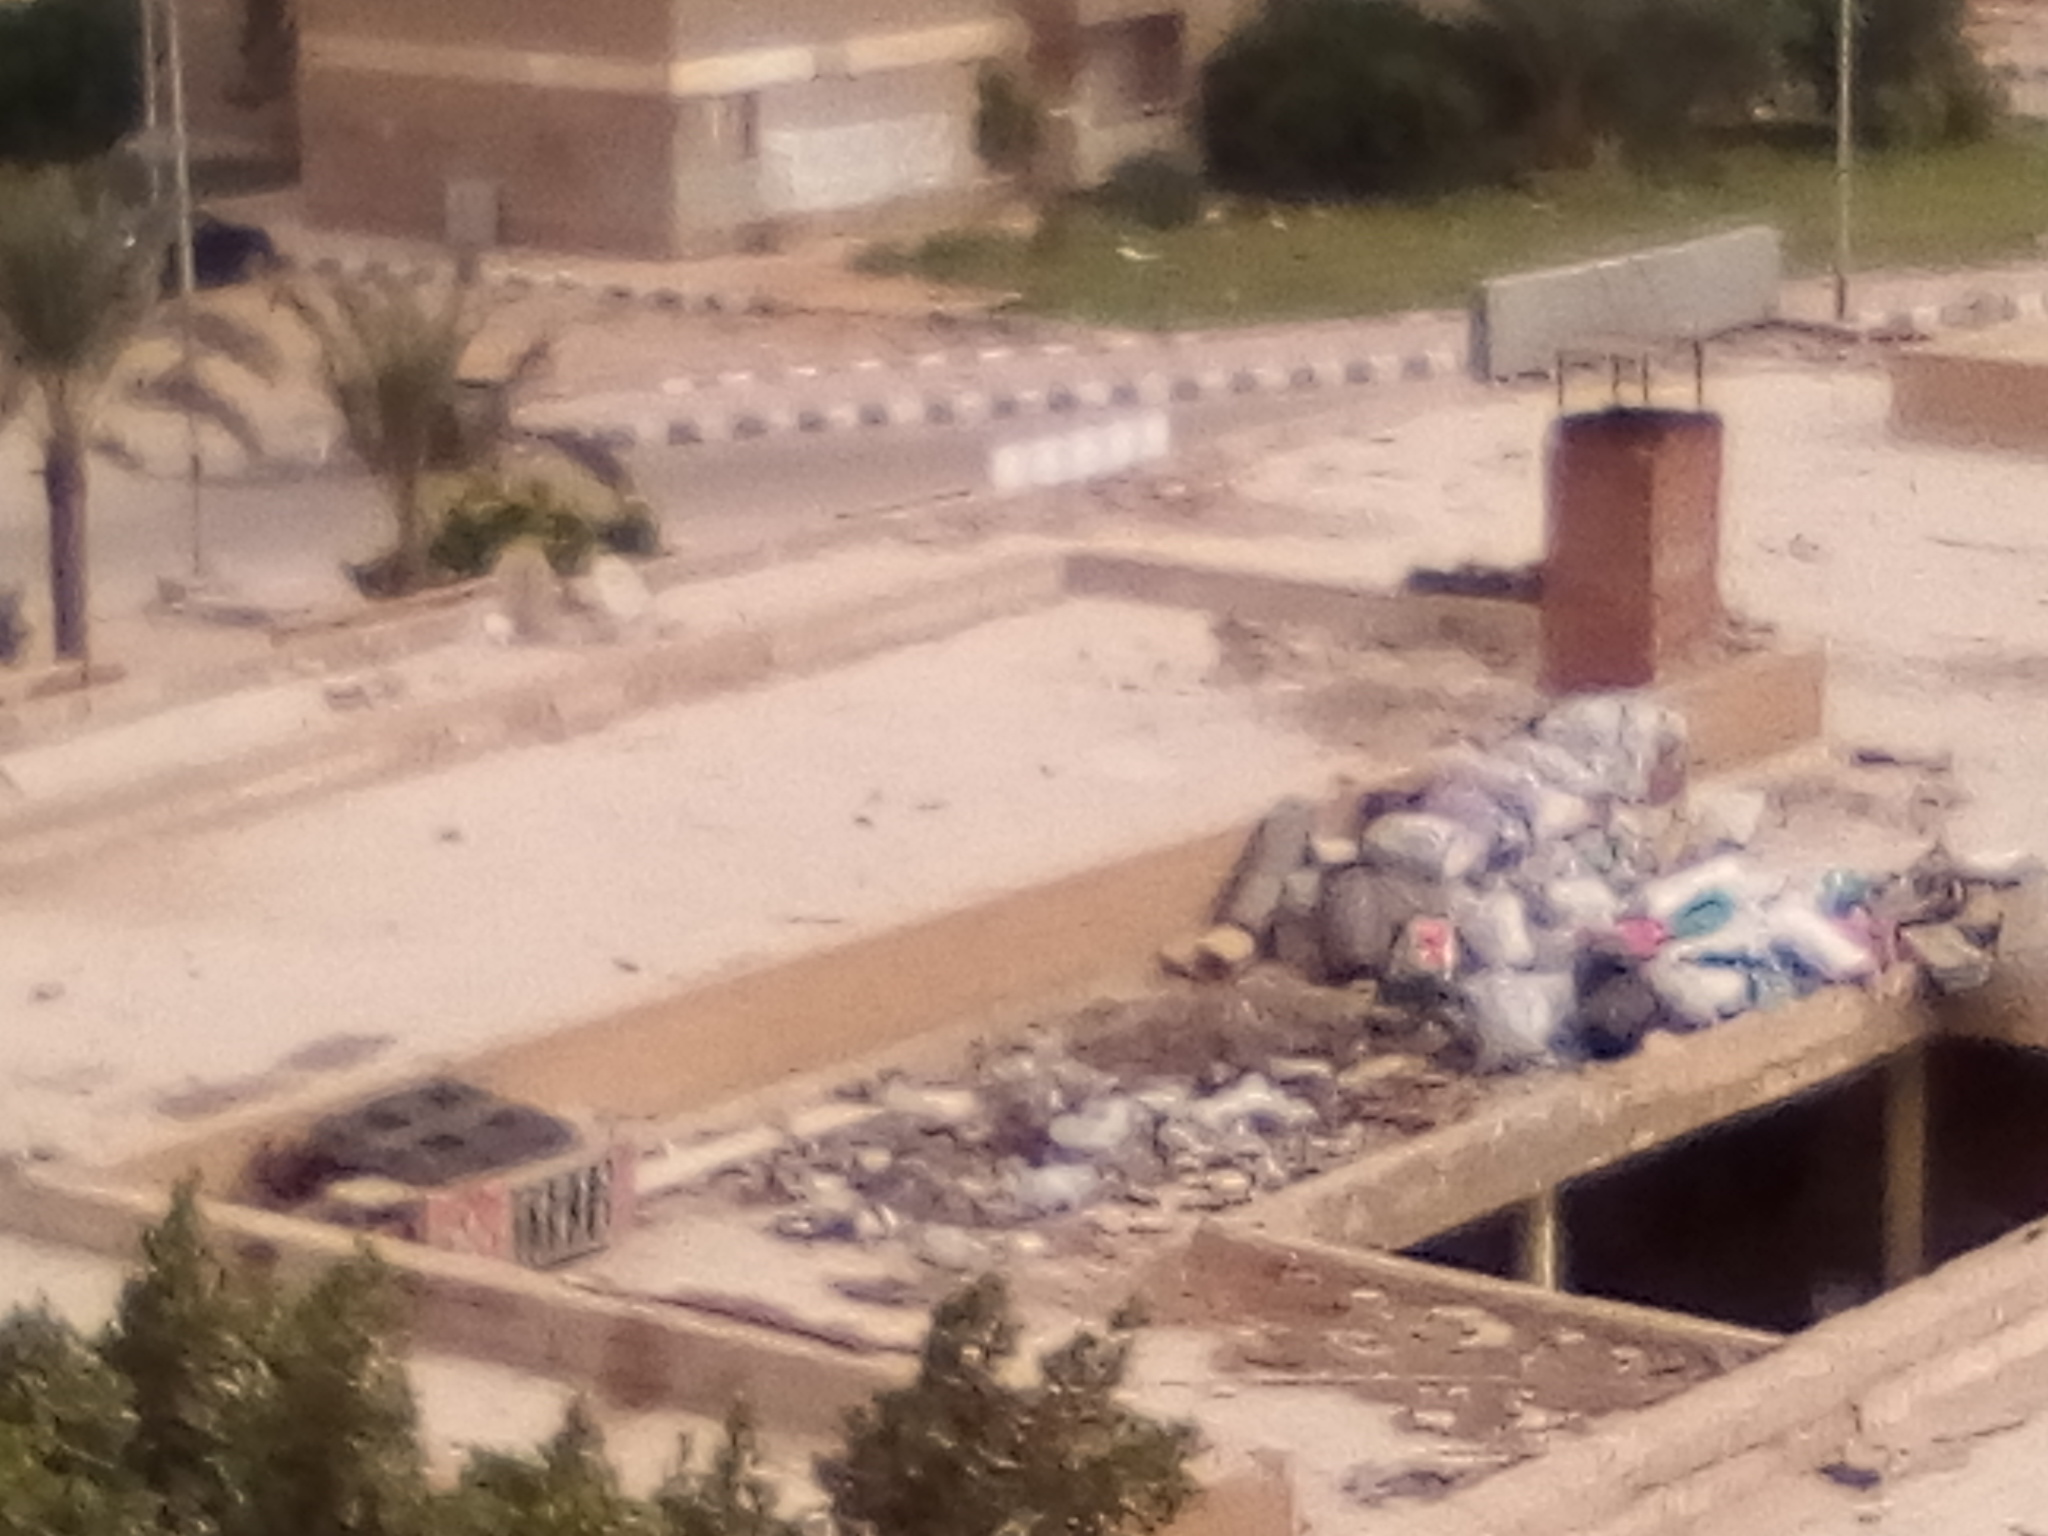 انتشار القمامة ومخلفات الورش والمحلات بالمجاورة 6 بالعاشر من رمضان (16)